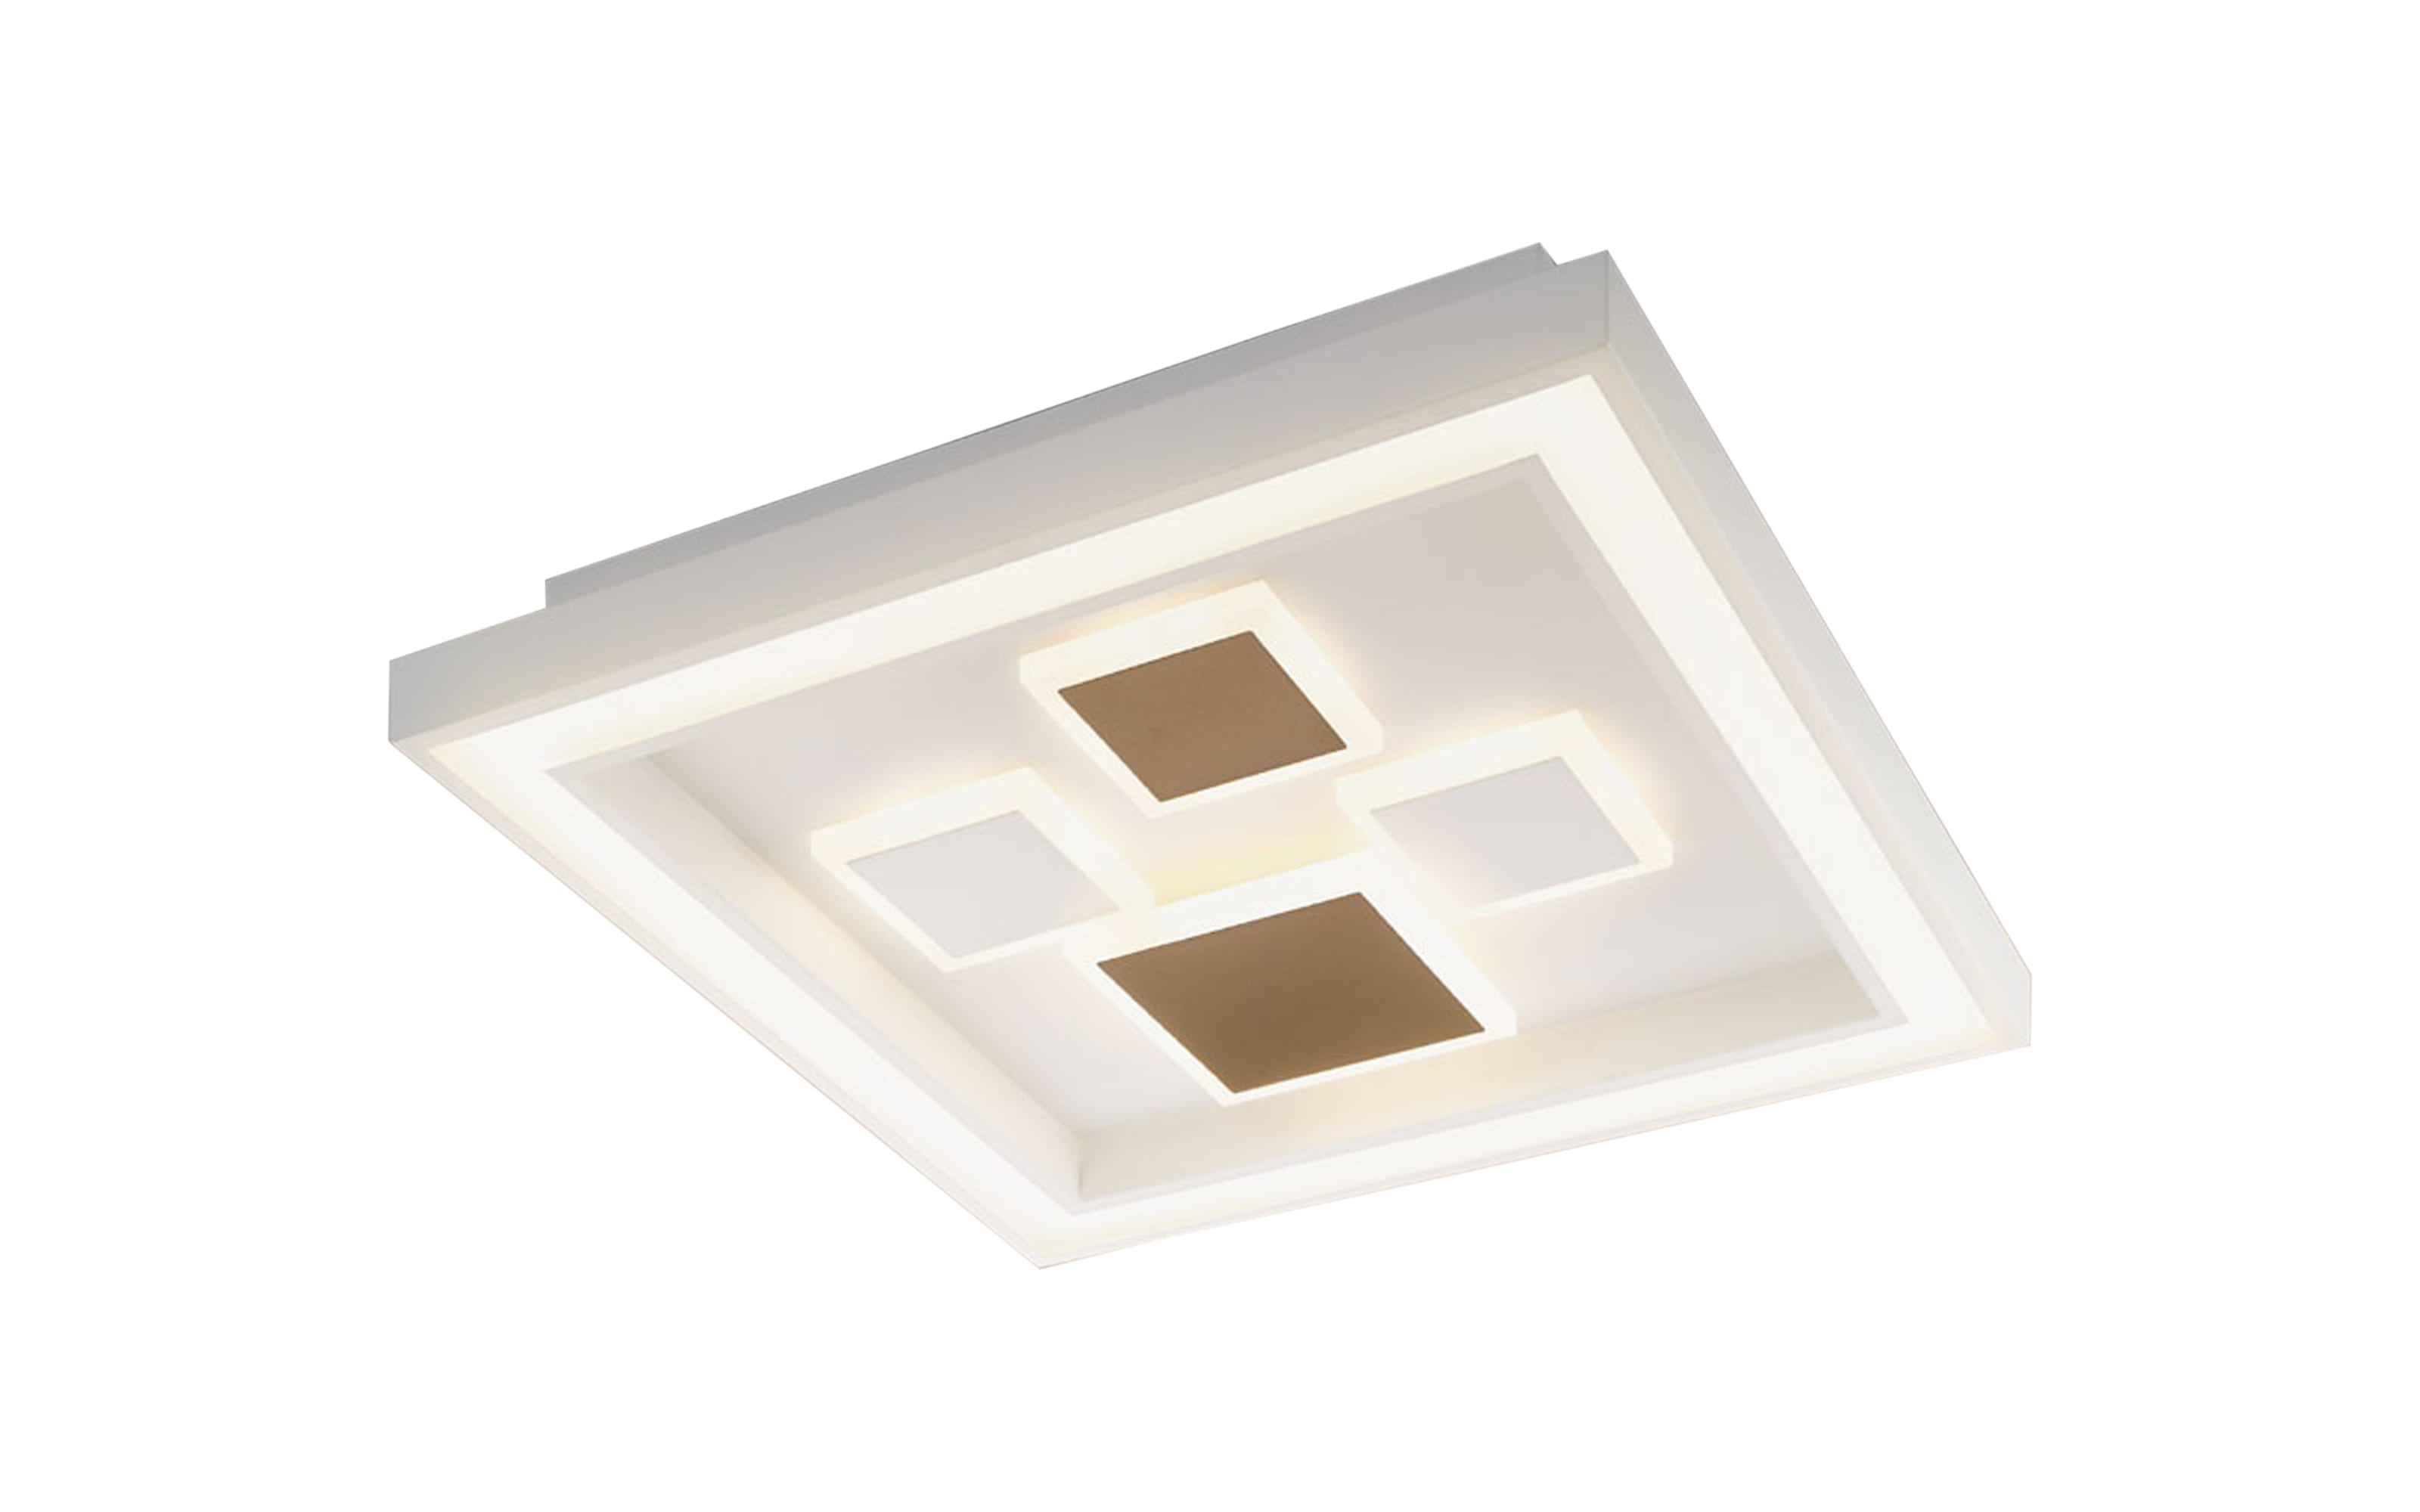 LED-Deckenleuchte Stina, weiß/silberfarbig, 48 cm